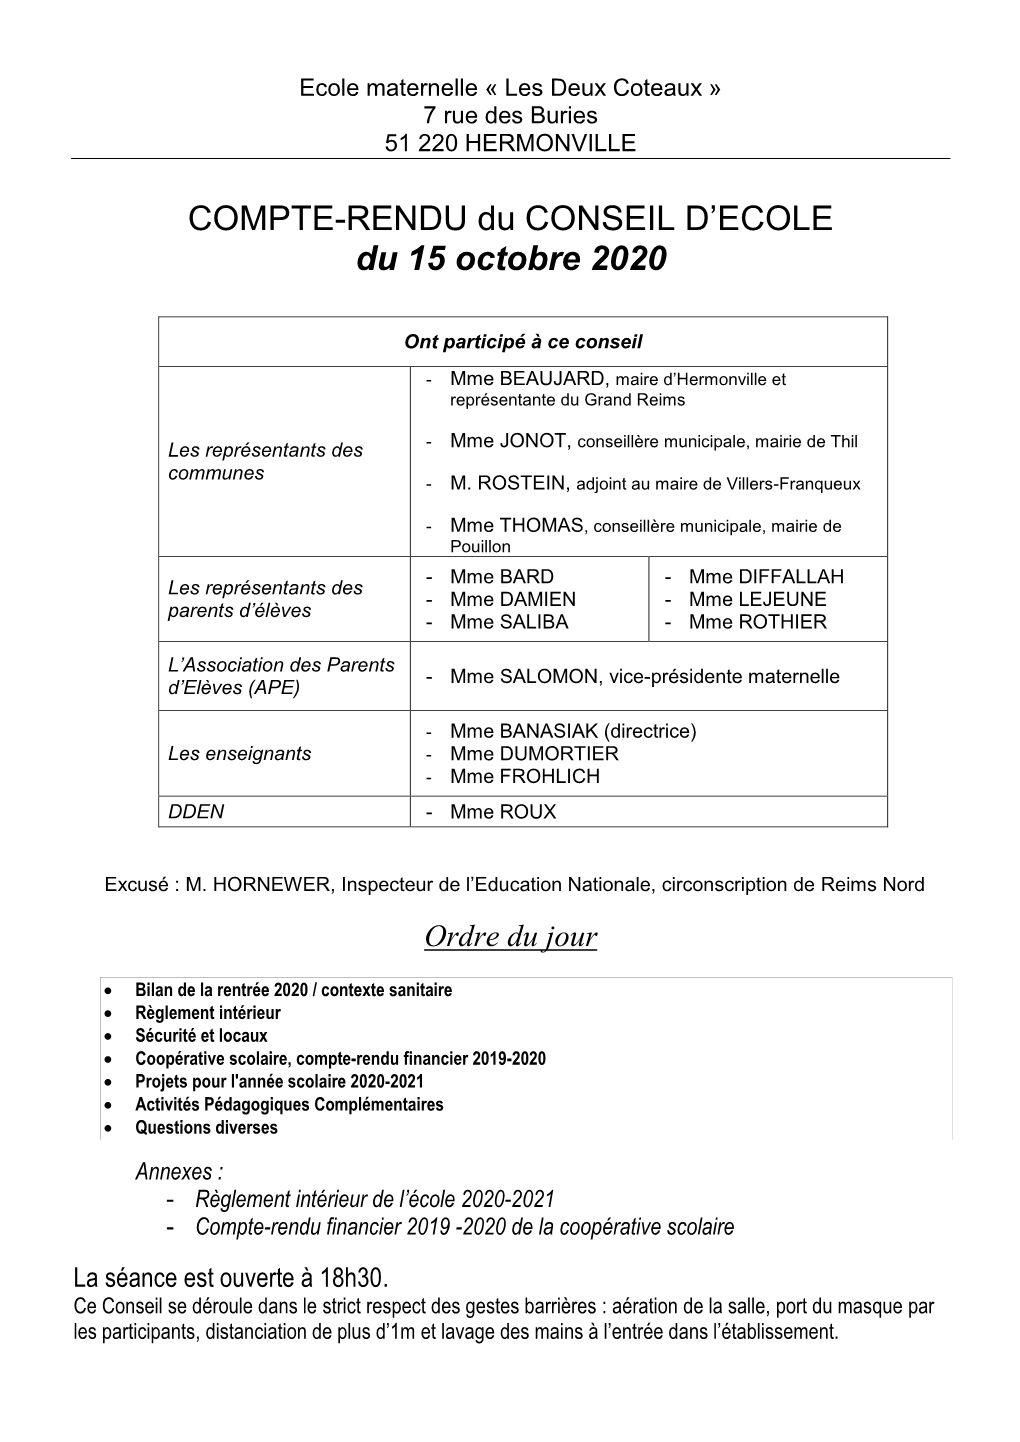 COMPTE-RENDU Du CONSEIL D'ecole Du 15 Octobre 2020